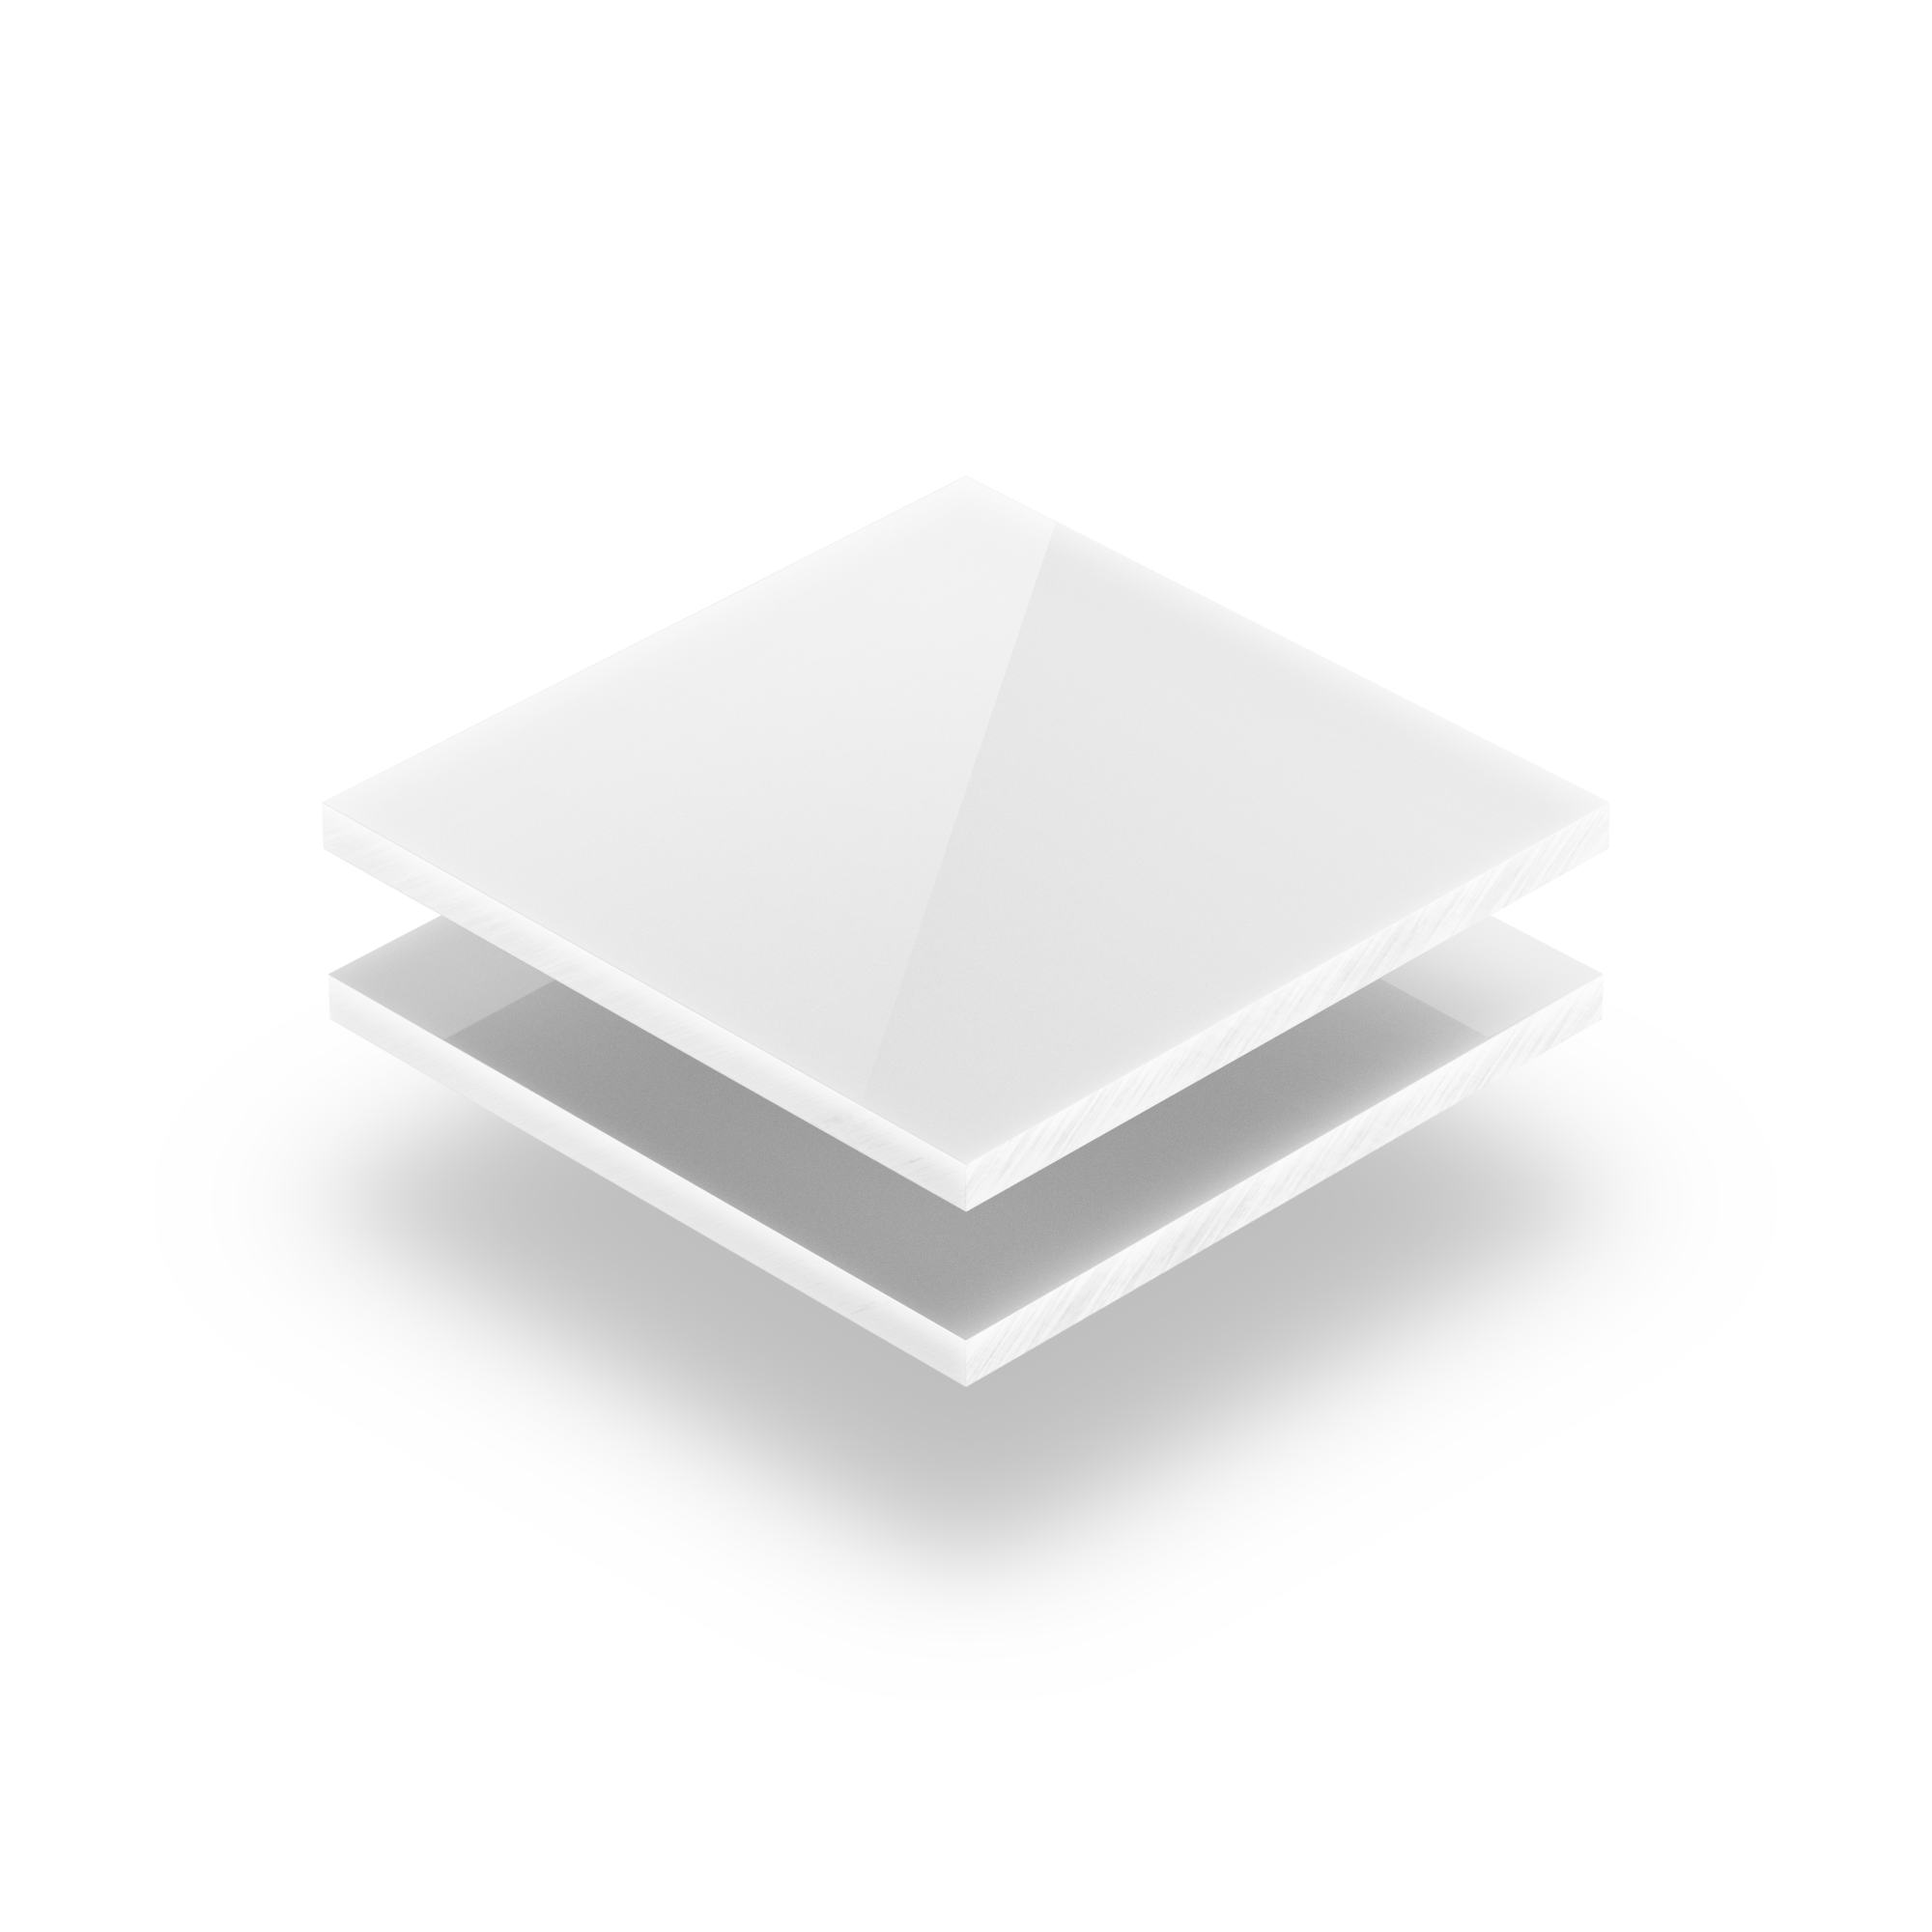 Plexiglas® XT Opak Weiß 3mm Stärke 3% LT blickdicht deckend Fixmaß-Zuschnitt 